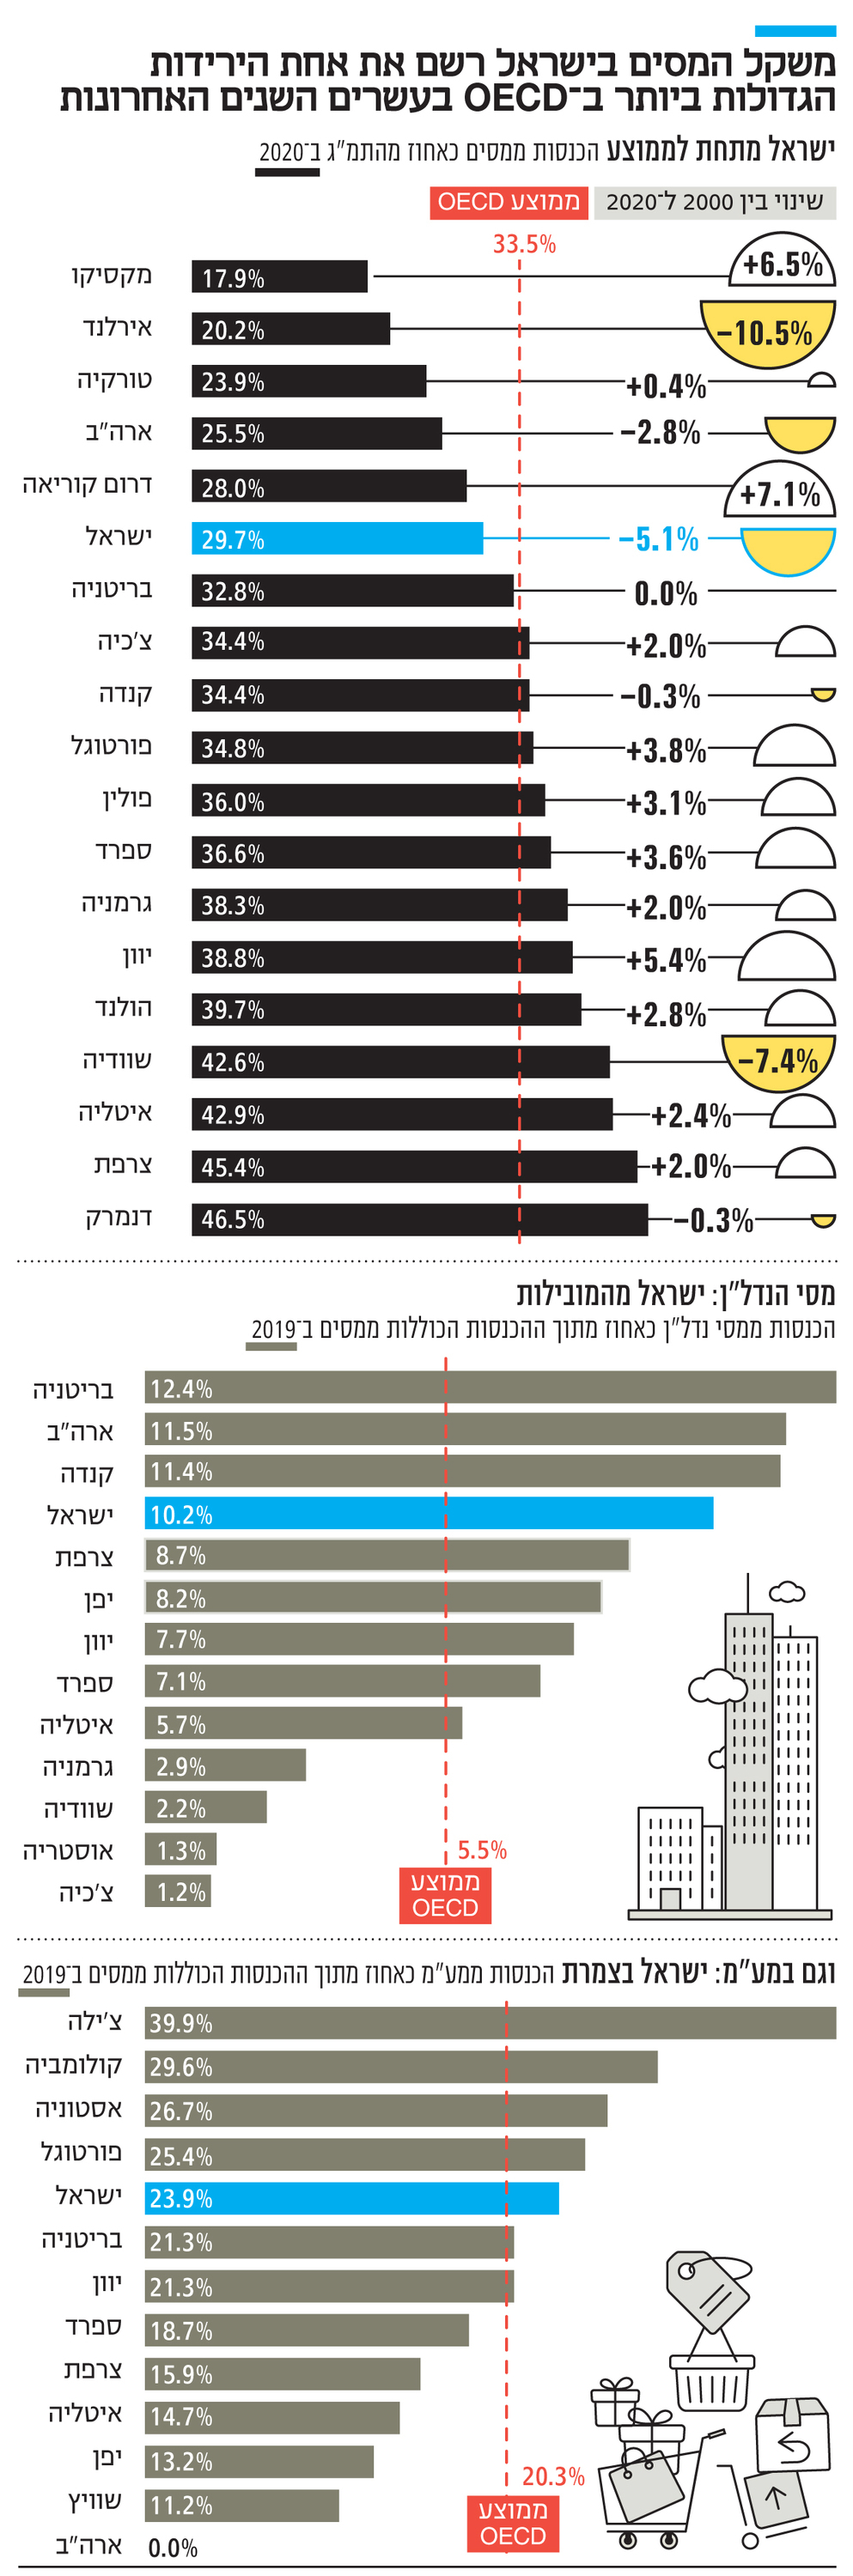 אינפו משקל המסים בישראל רשם את אחת הירידות